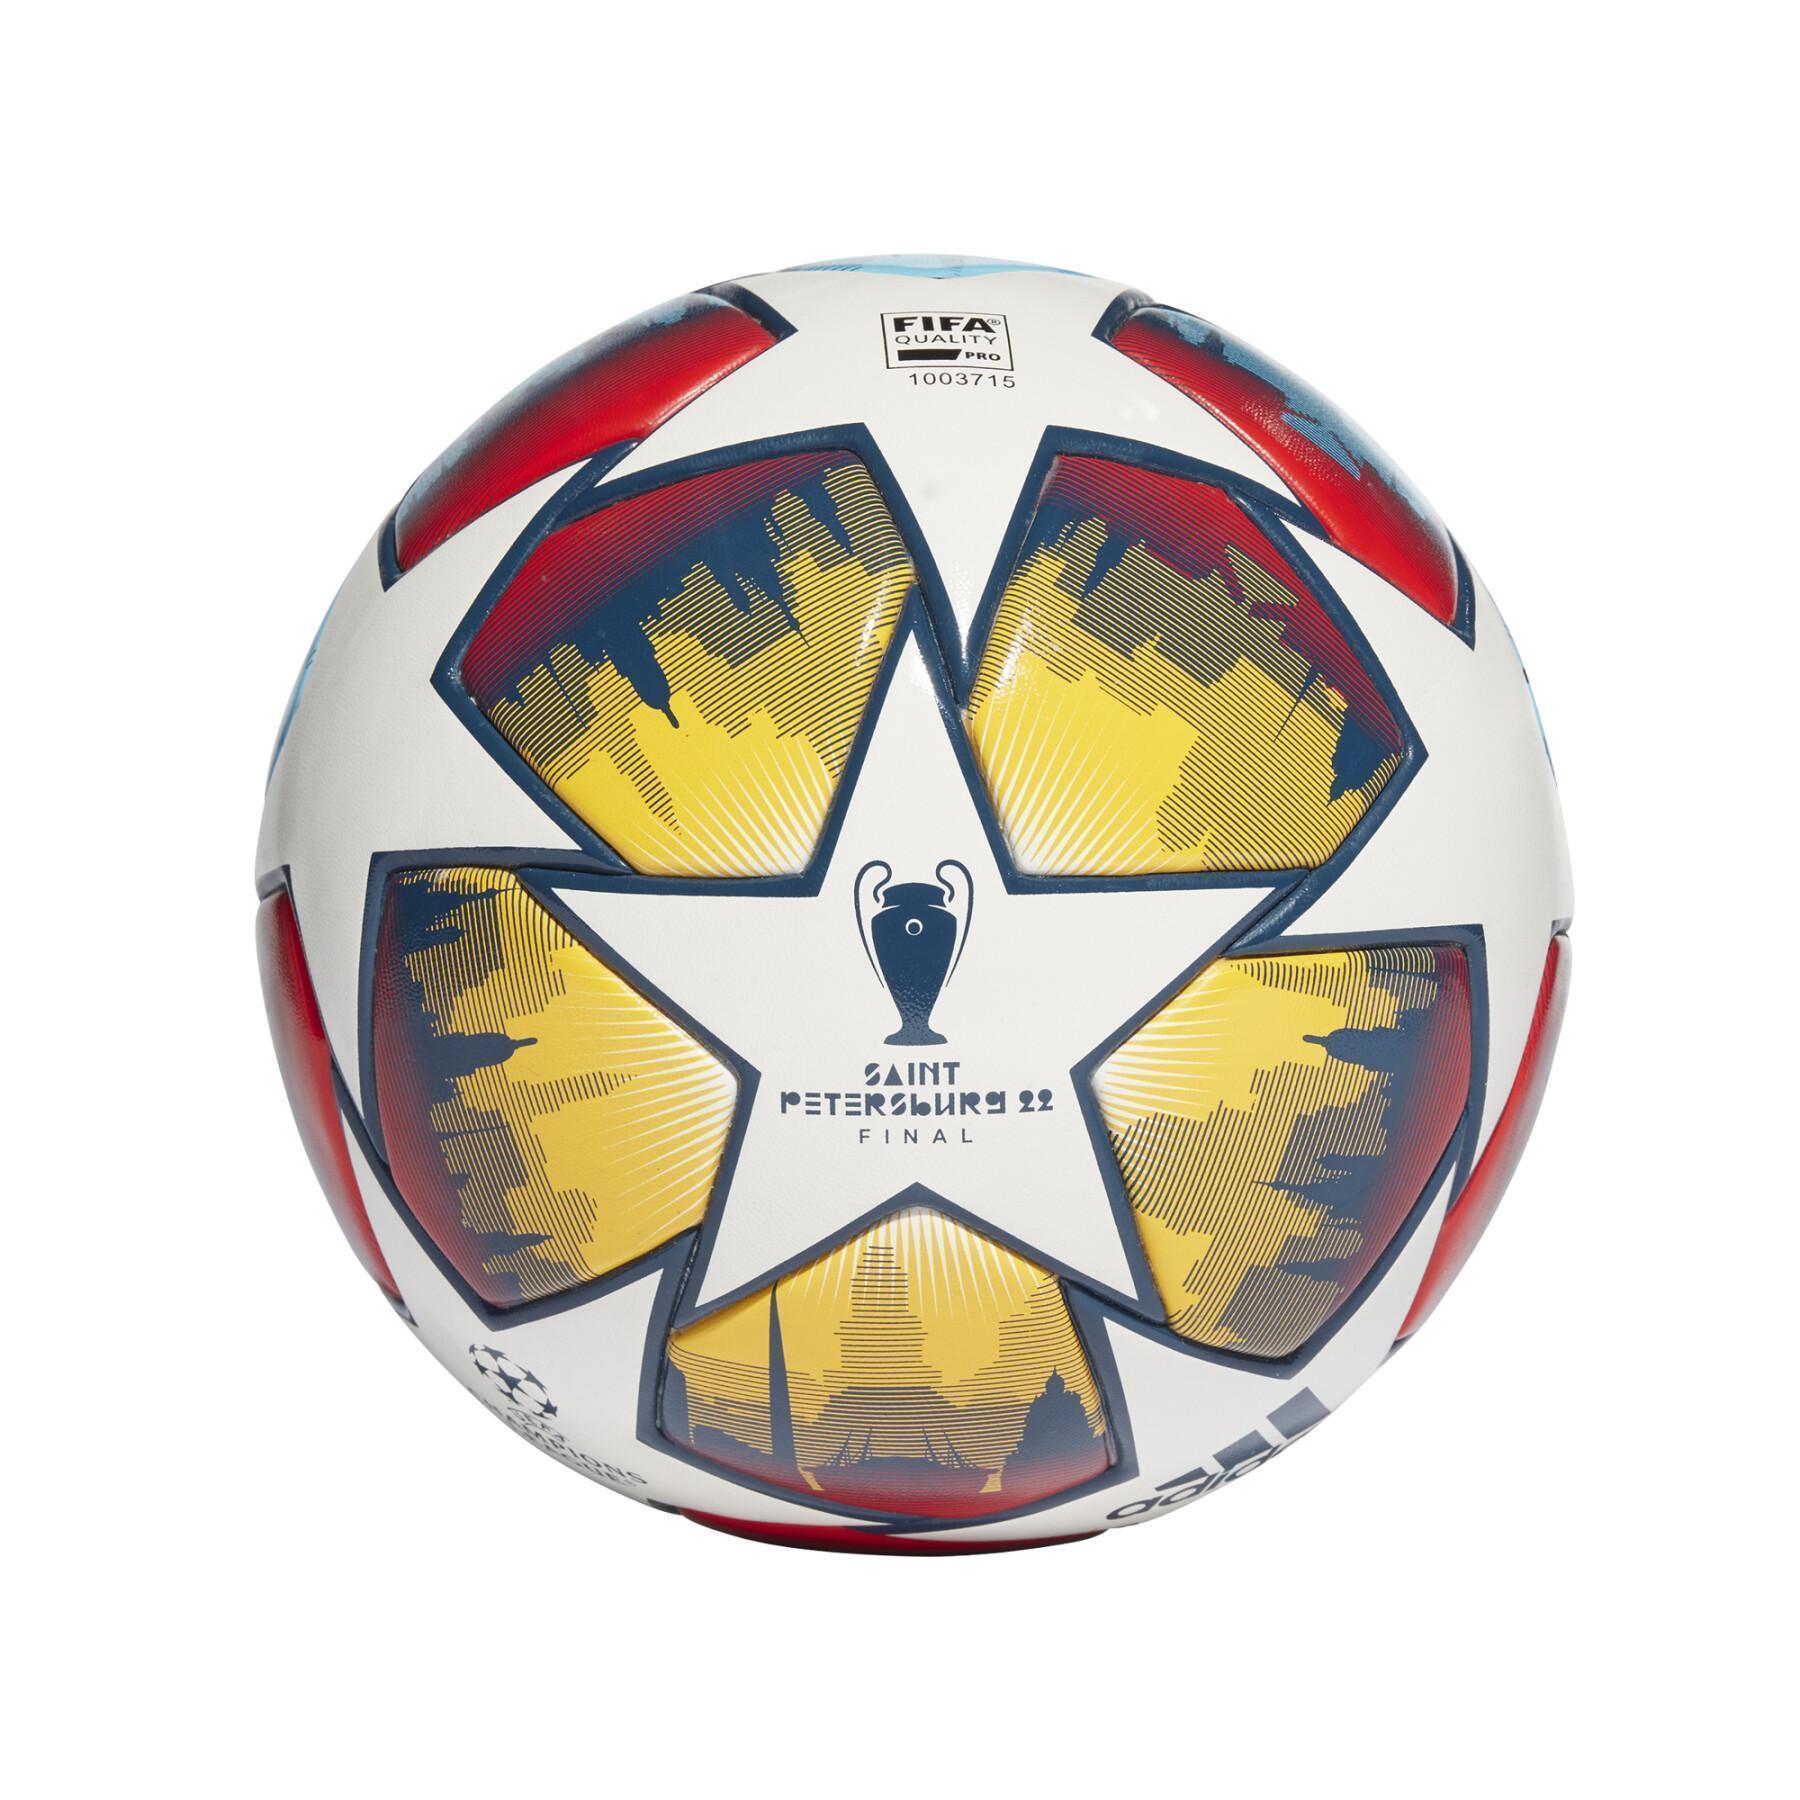 Balon Zénith St-Pétersbourg Champions League 2021/22